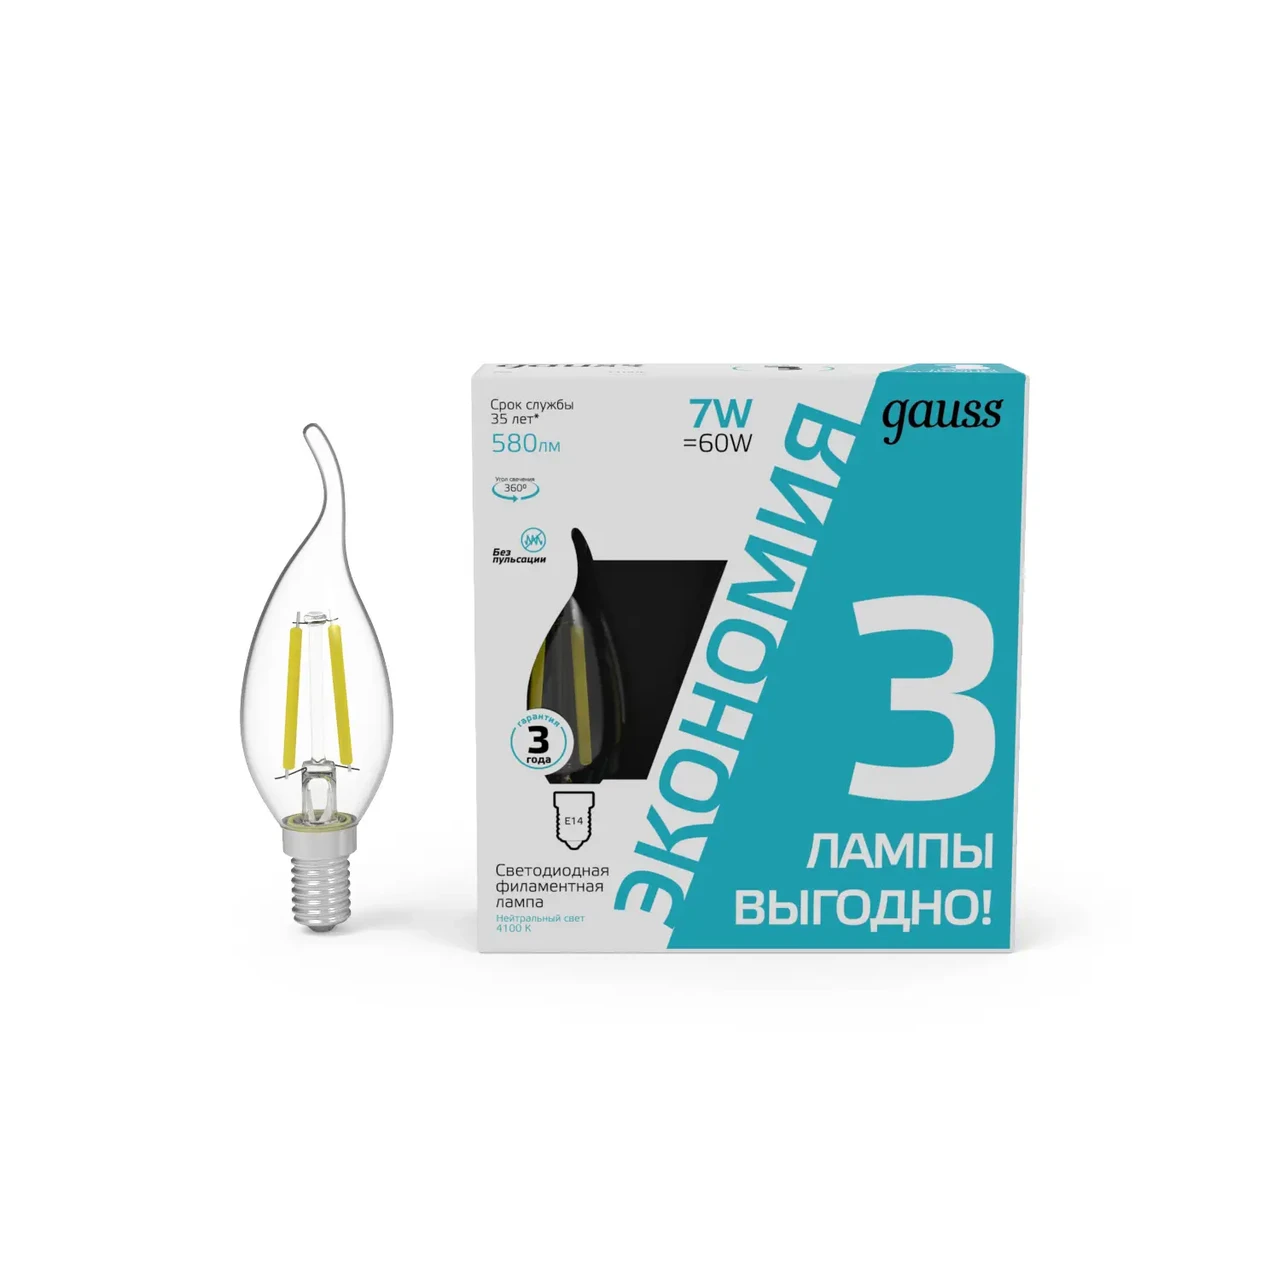 Лампа Gauss Filament Свеча на ветру 7W 580lm 4100К Е14 LED (3 лампы в упаковке) 1/20, фото 1